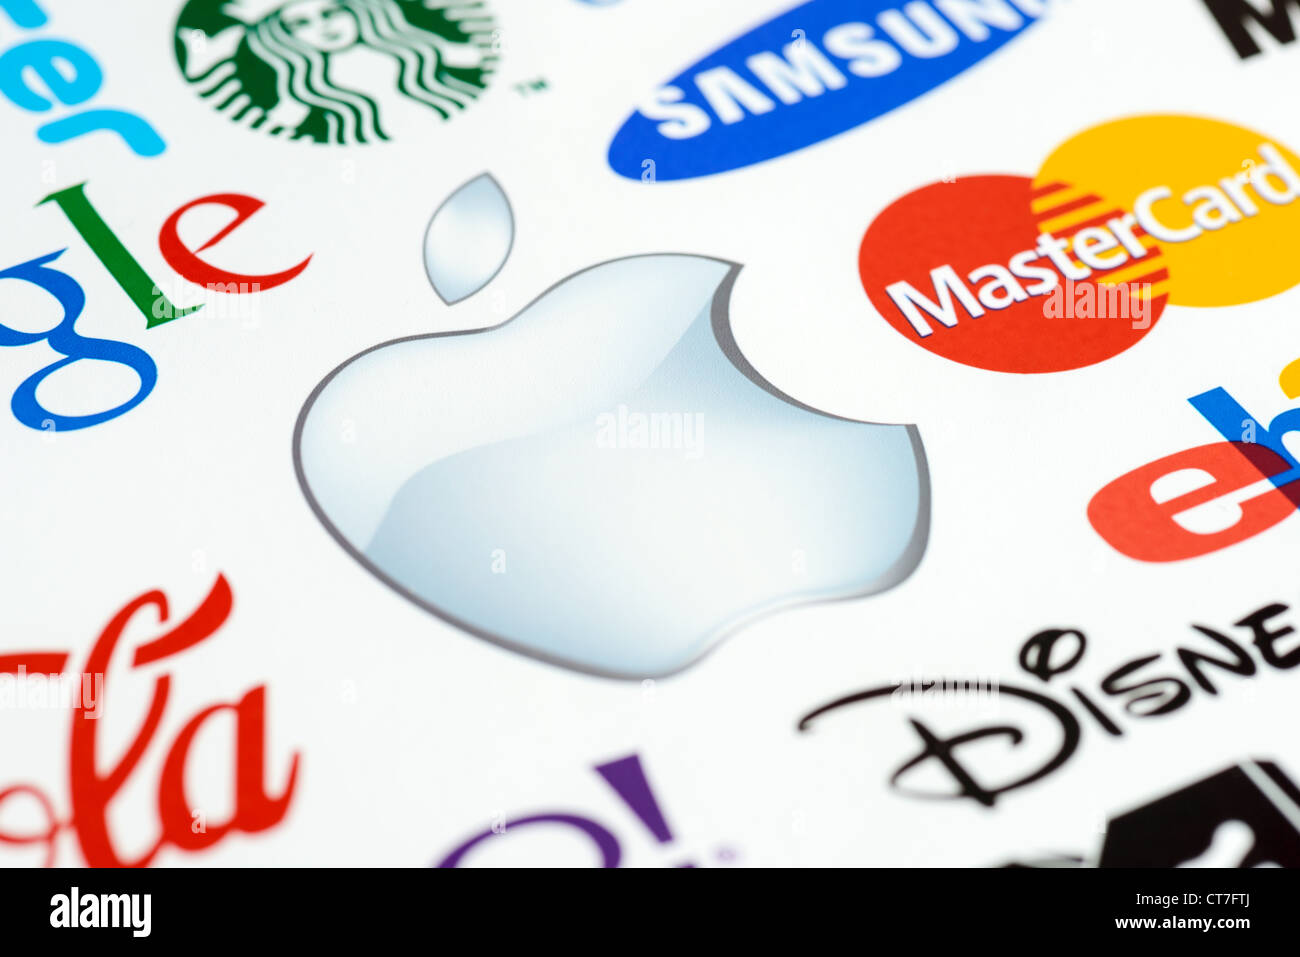 Foto von der Apple Inc.-Logo auf das bedruckte Papier zusammen mit einer Sammlung von bekannten Marken der Welt hautnah. Stockfoto